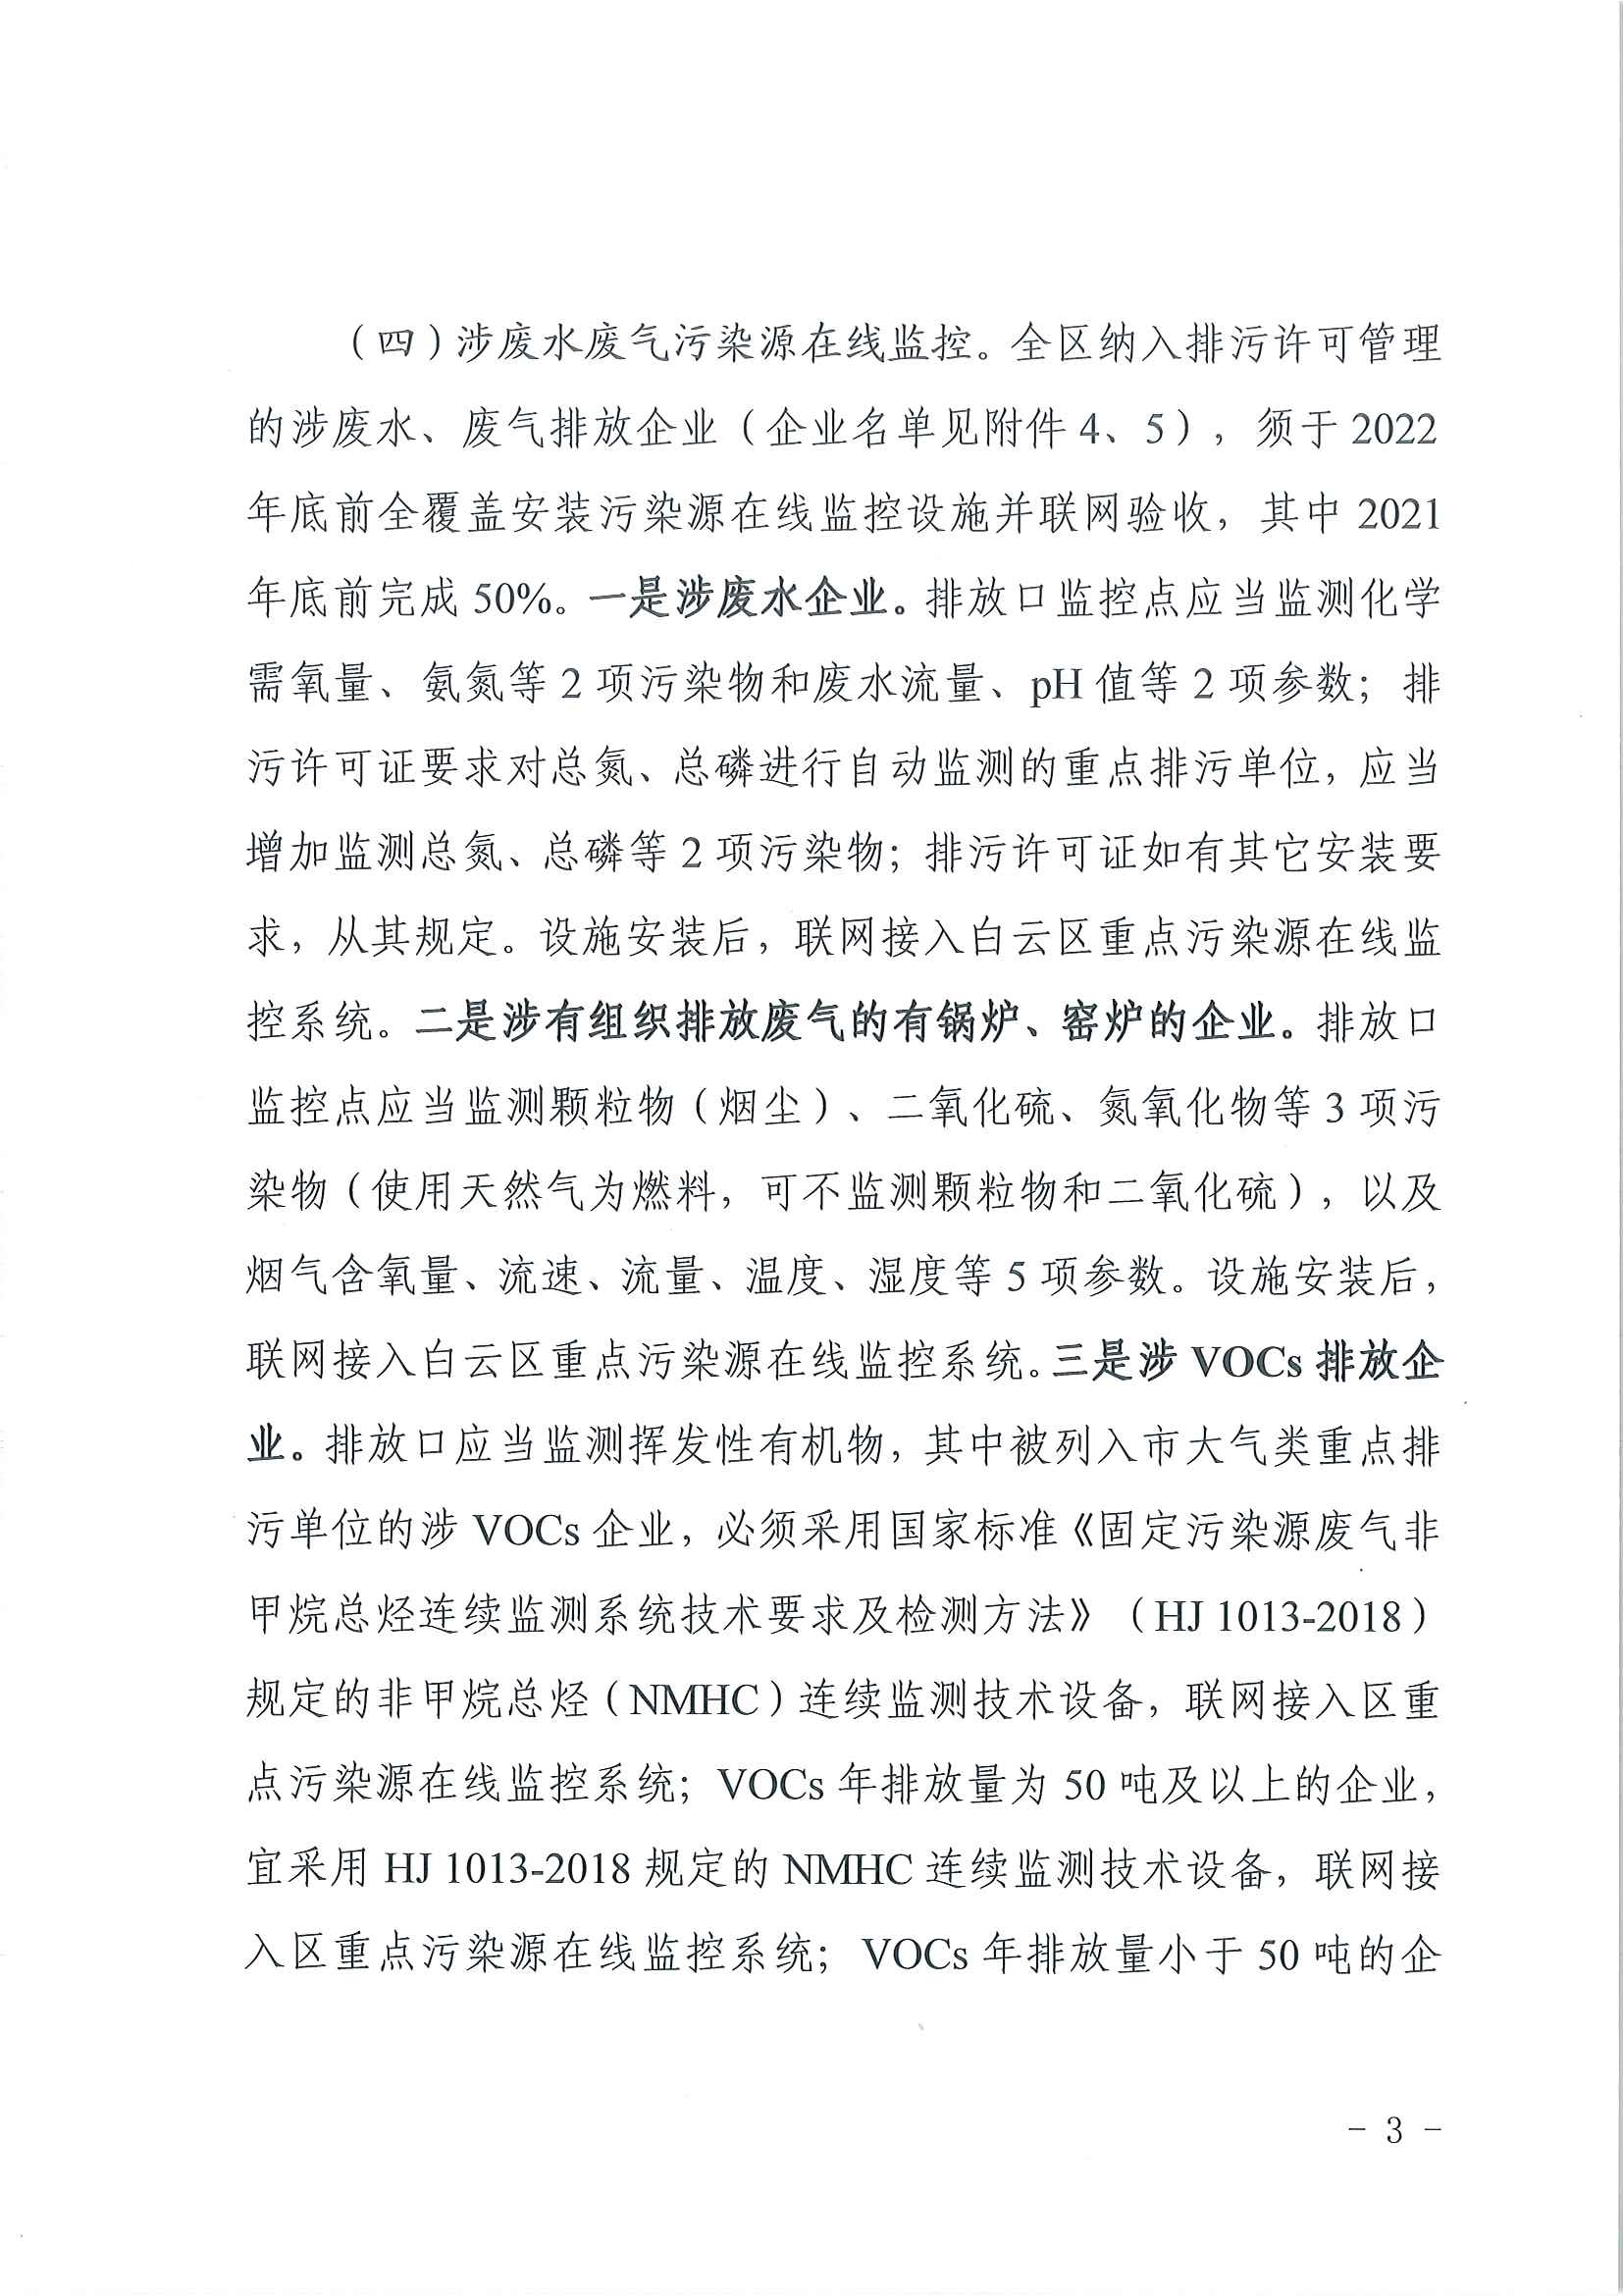 广州市生态环境局白云分局关于推进污染源在线监控设施建设工作的通知(1)_页面_3.jpg